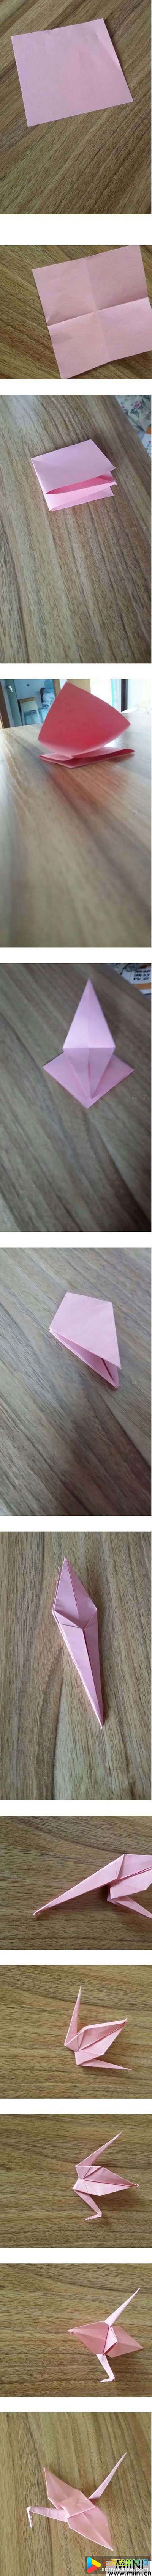 怎样折纸千纸鹤的折法图解教程简单好看